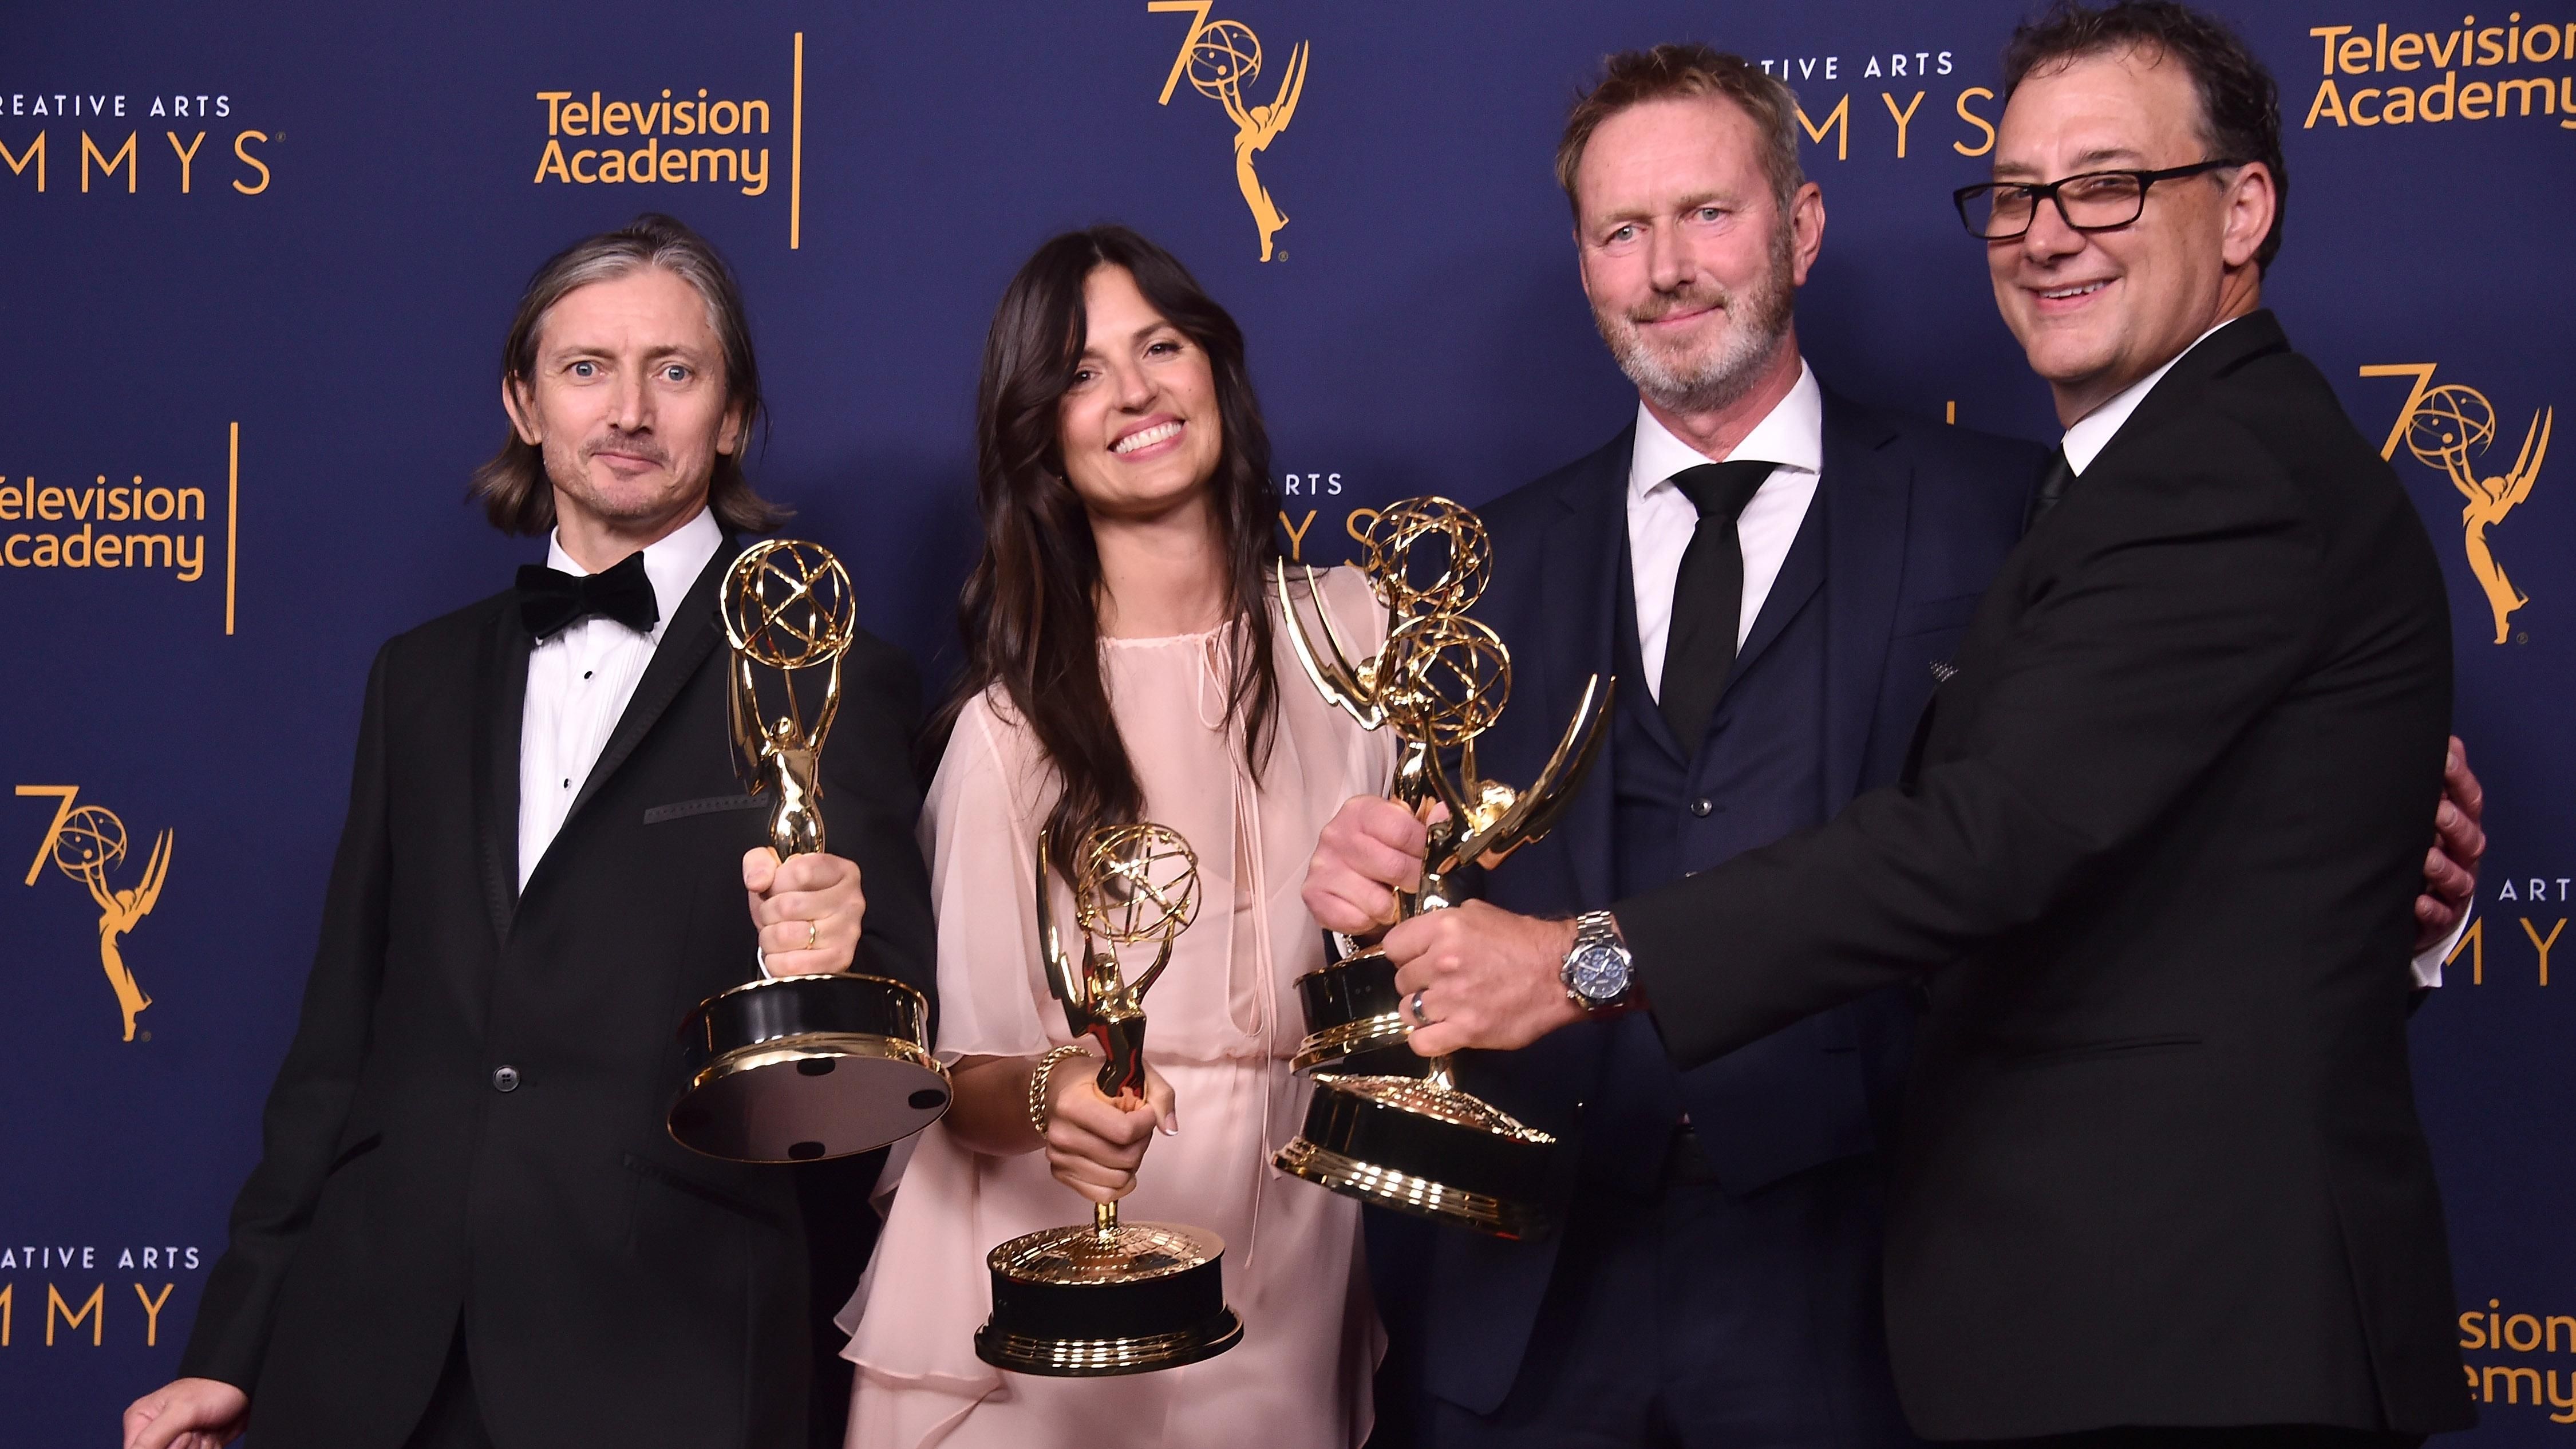 Сериал "Игра престолов" получил семь наград в престижной кинопремии